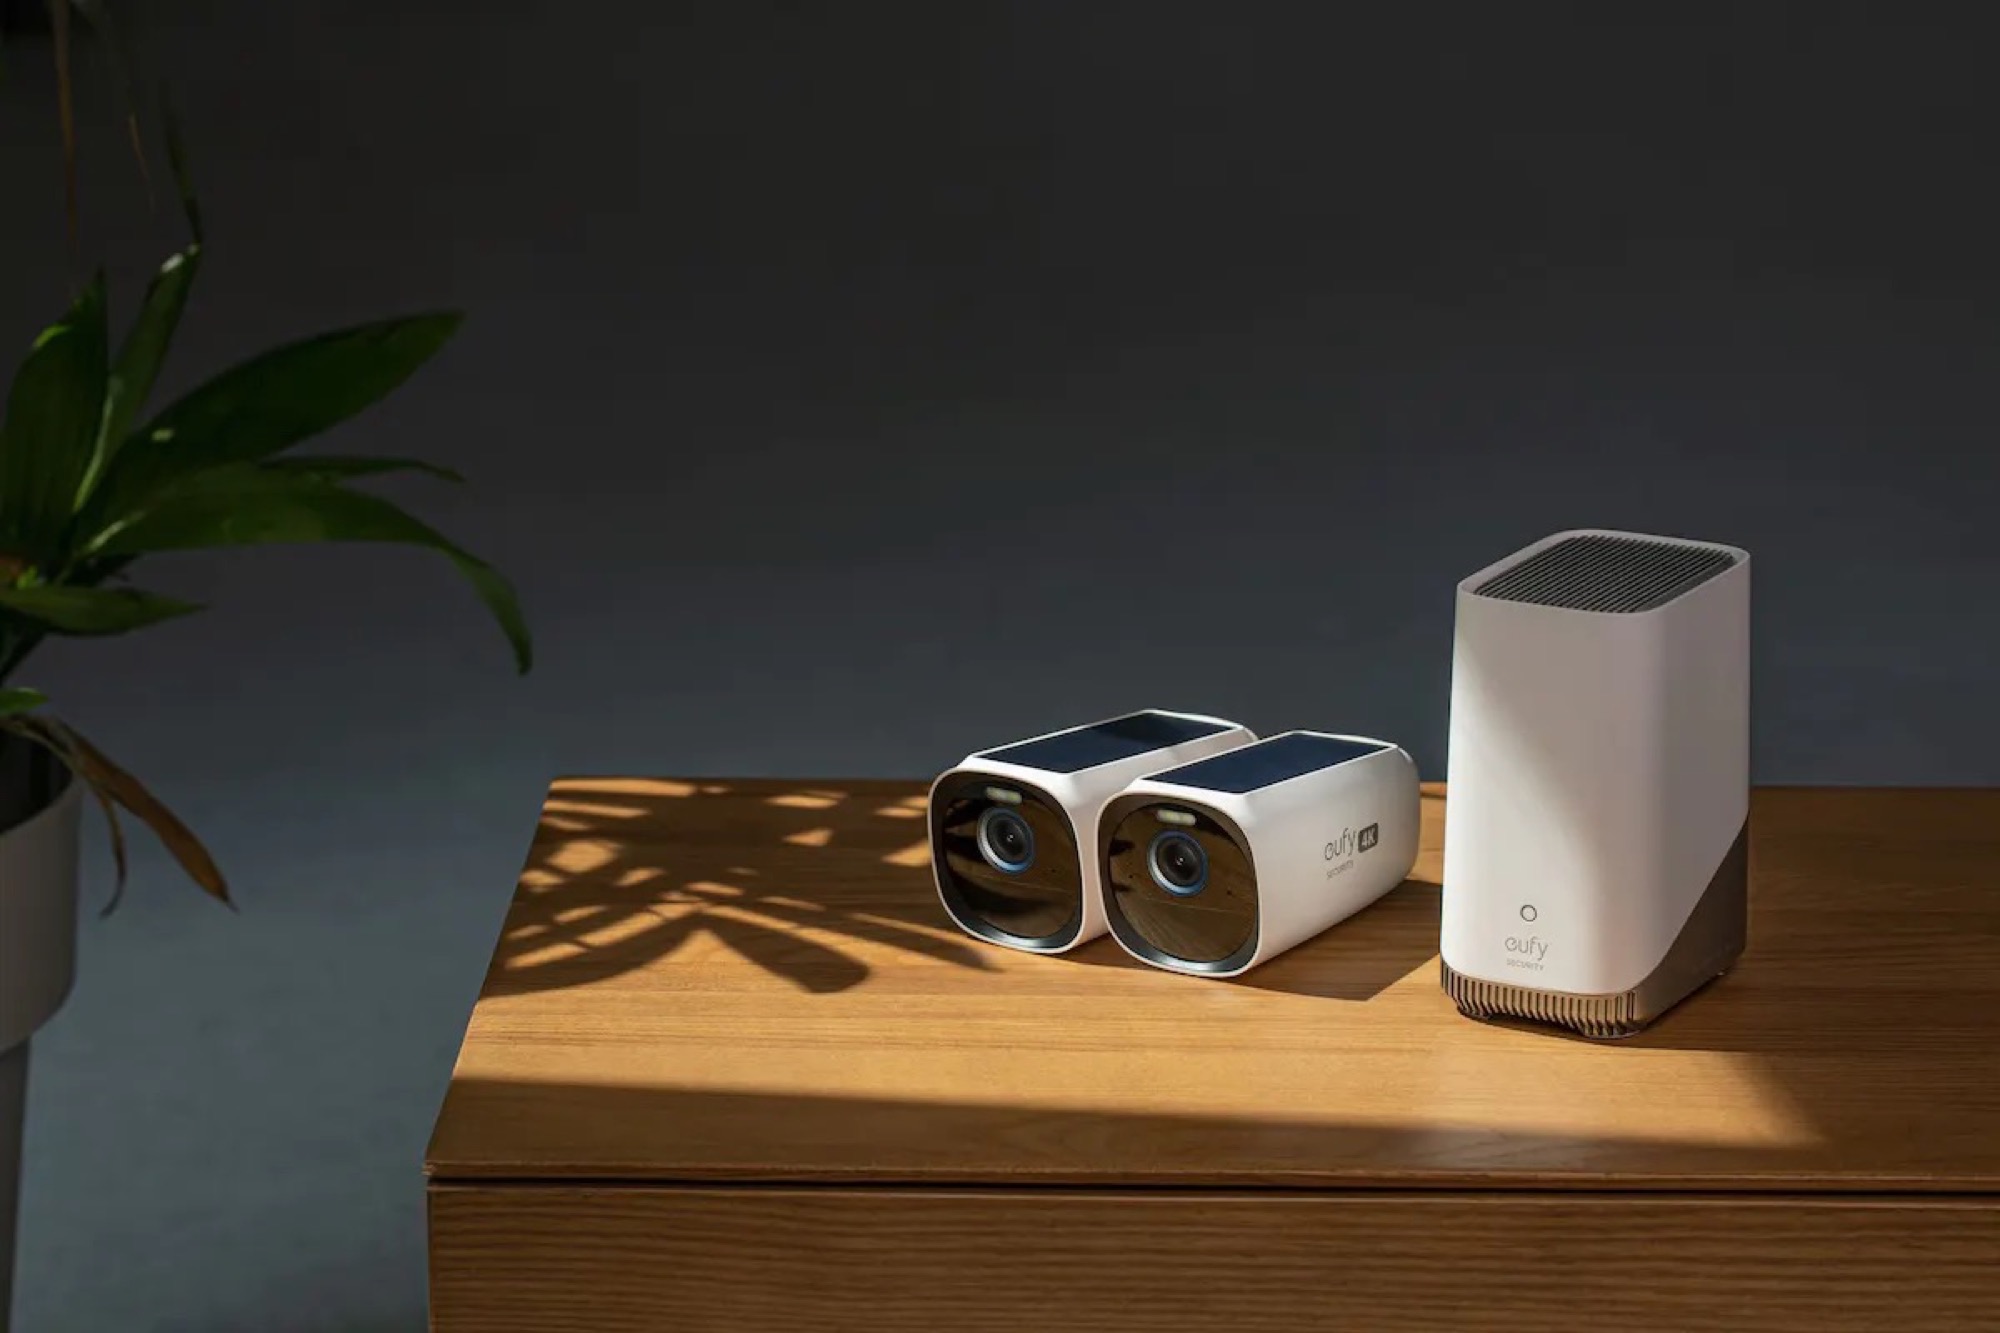 Eufy introduce nuove telecamere di sorveglianza intelligenti.  Le persone possono essere identificate attraverso l’elaborazione locale.